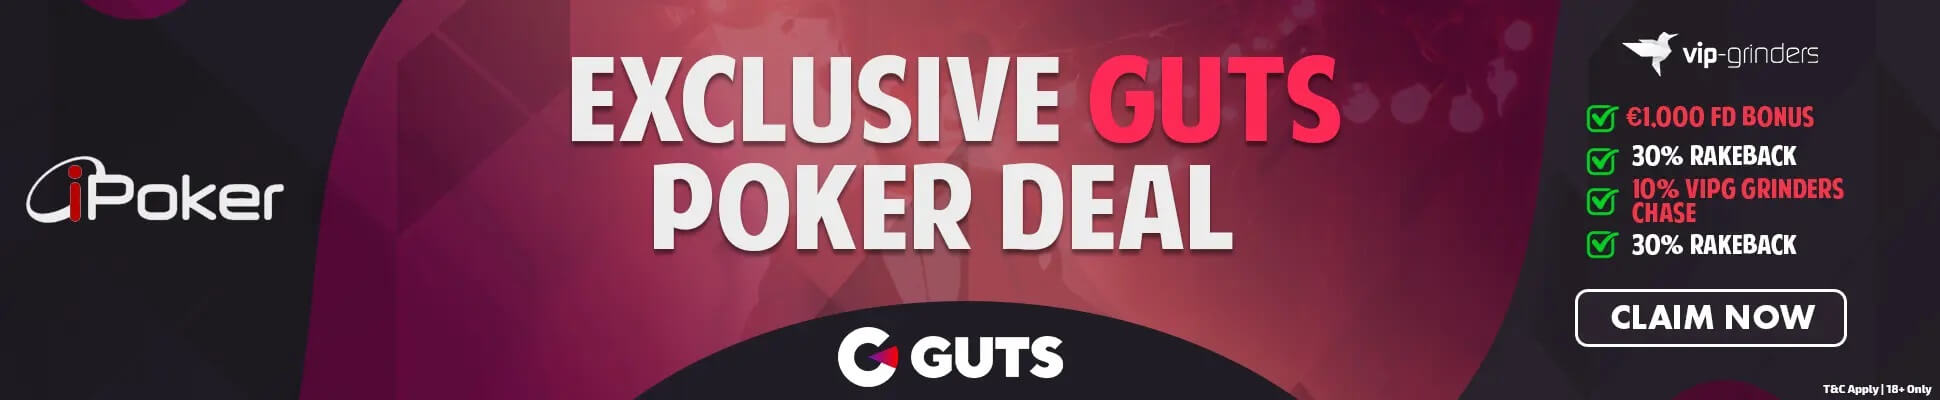 guts-offer-banner-1940x400-1